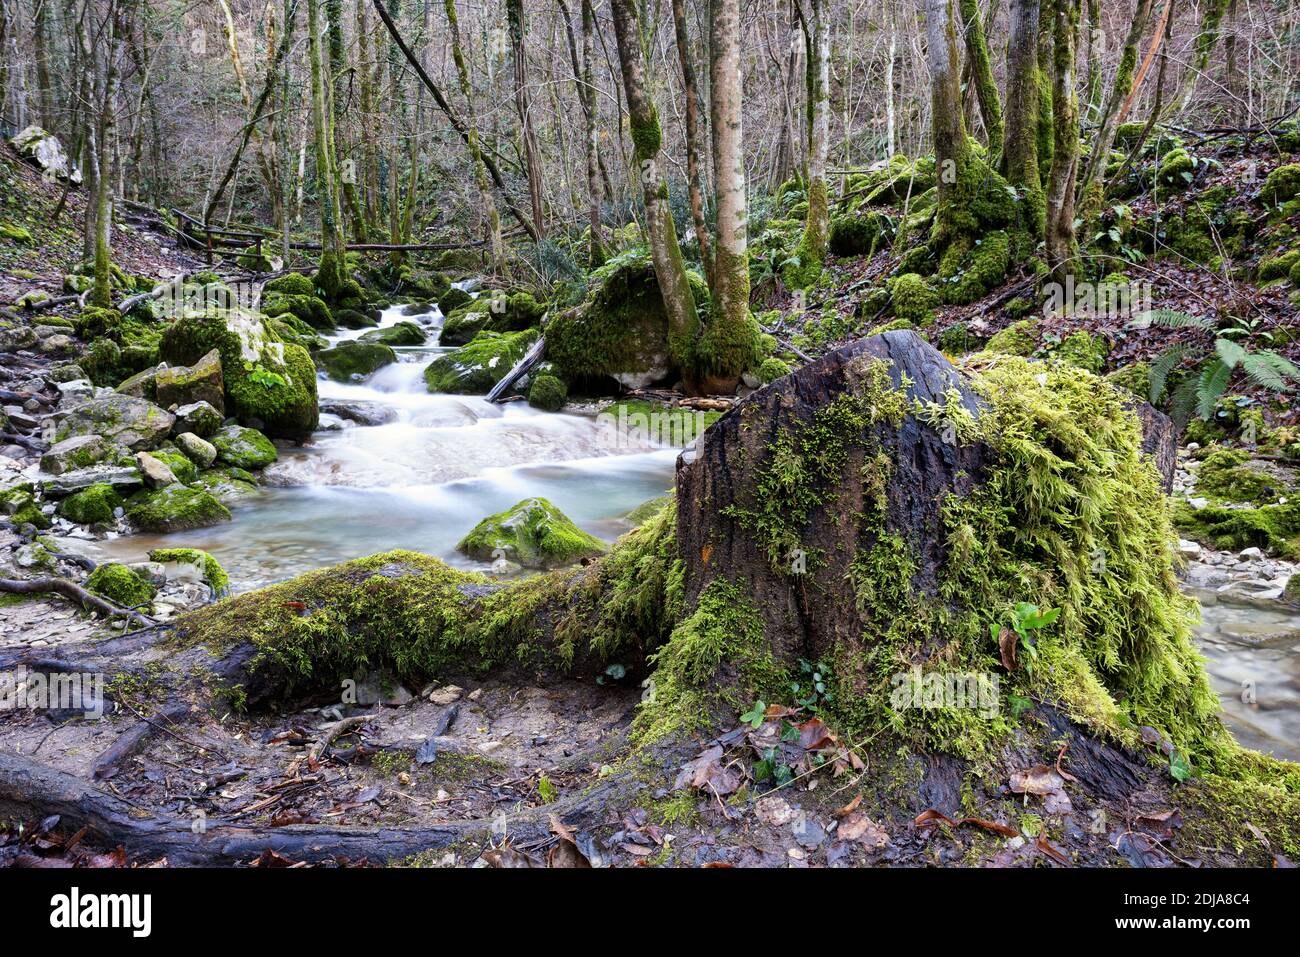 Mountain creek s'étend sur une forêt avec des rochers et des arbres couverts de mousse. Valli del Natisone nature, Friuli Venezia Giulia, province d'Udine, Italie. Banque D'Images